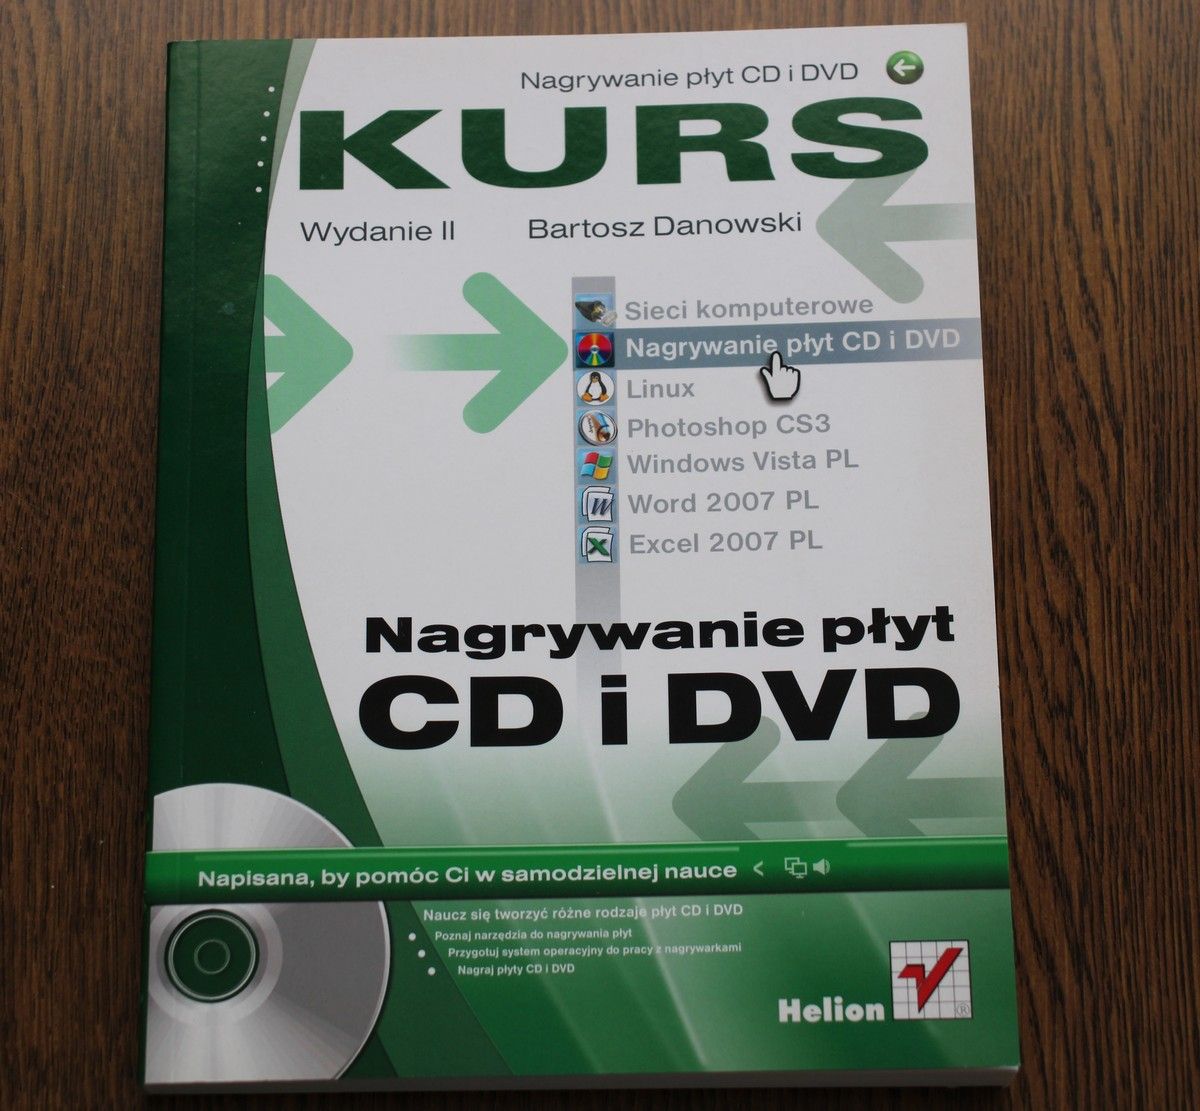 Nagrywanie płyt CD i DVD Kurs wydanie II, Bartosz Danowski, Podręcznik